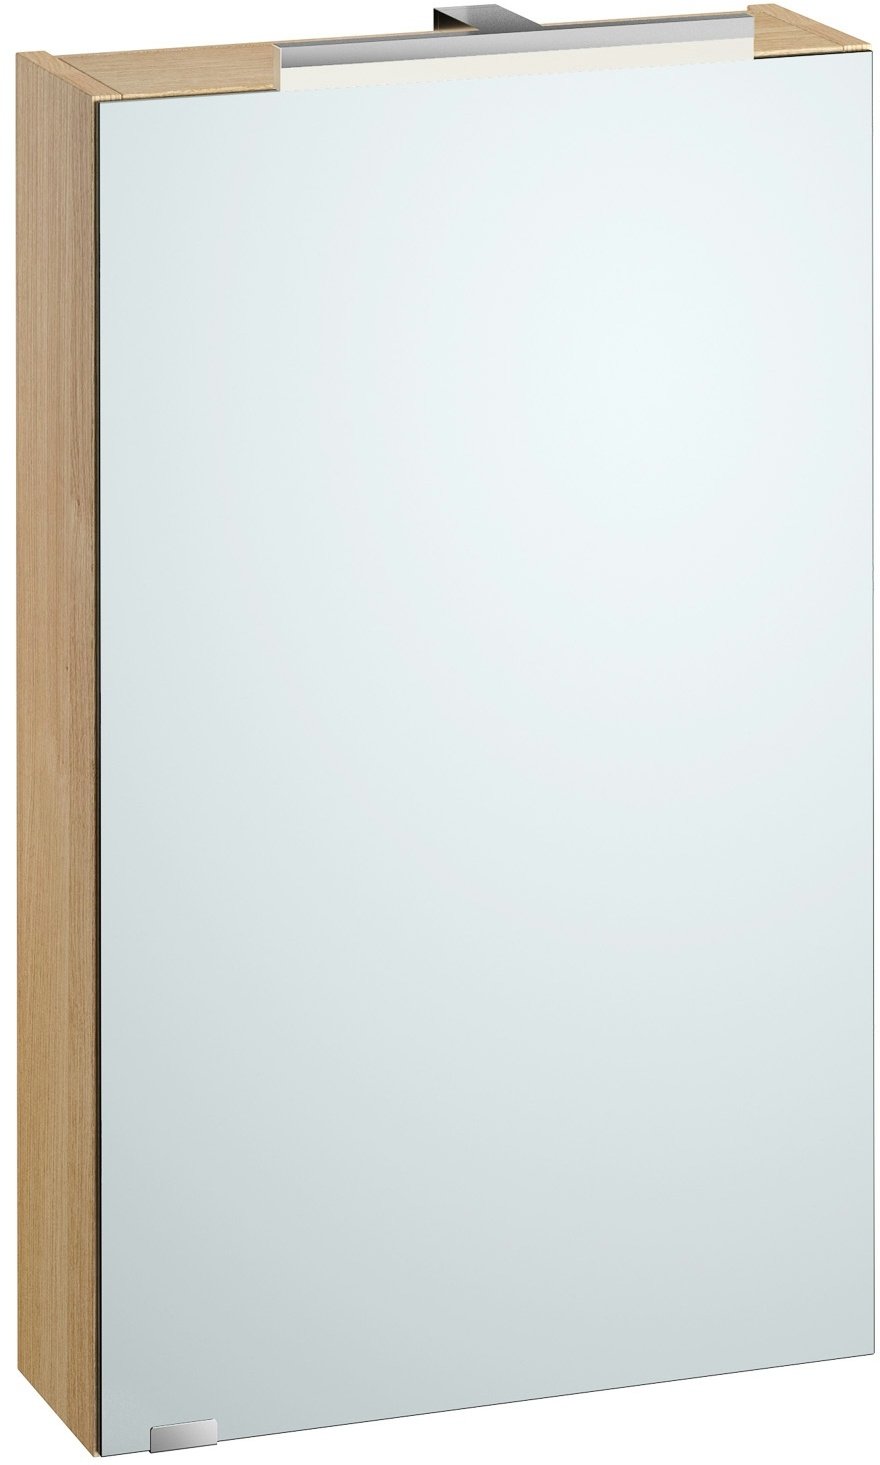 Erst-Holz Spiegelschrank Hängeschrank mit Licht und Steckdose 3 Farbvarianten Eiche Dekor taupe grau V-90.59-S